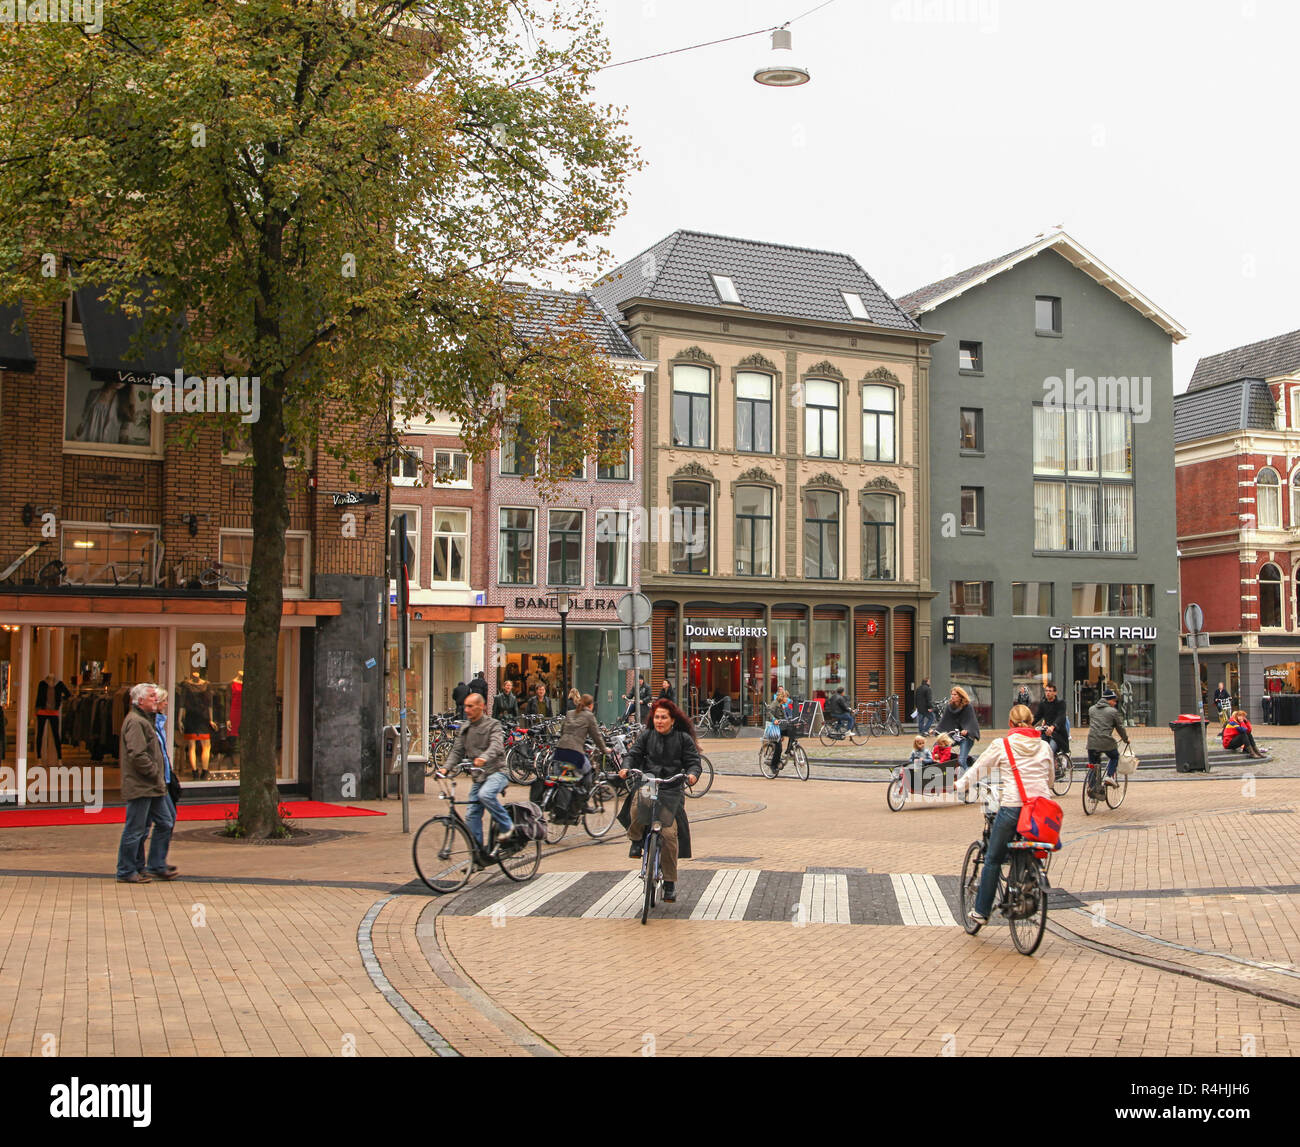 Les motards sur street dans le centre de ville néerlandaise de Groningue. Le centre de la ville de Groningen aux Pays-Bas est le plus souvent gratuitement des voitures Banque D'Images